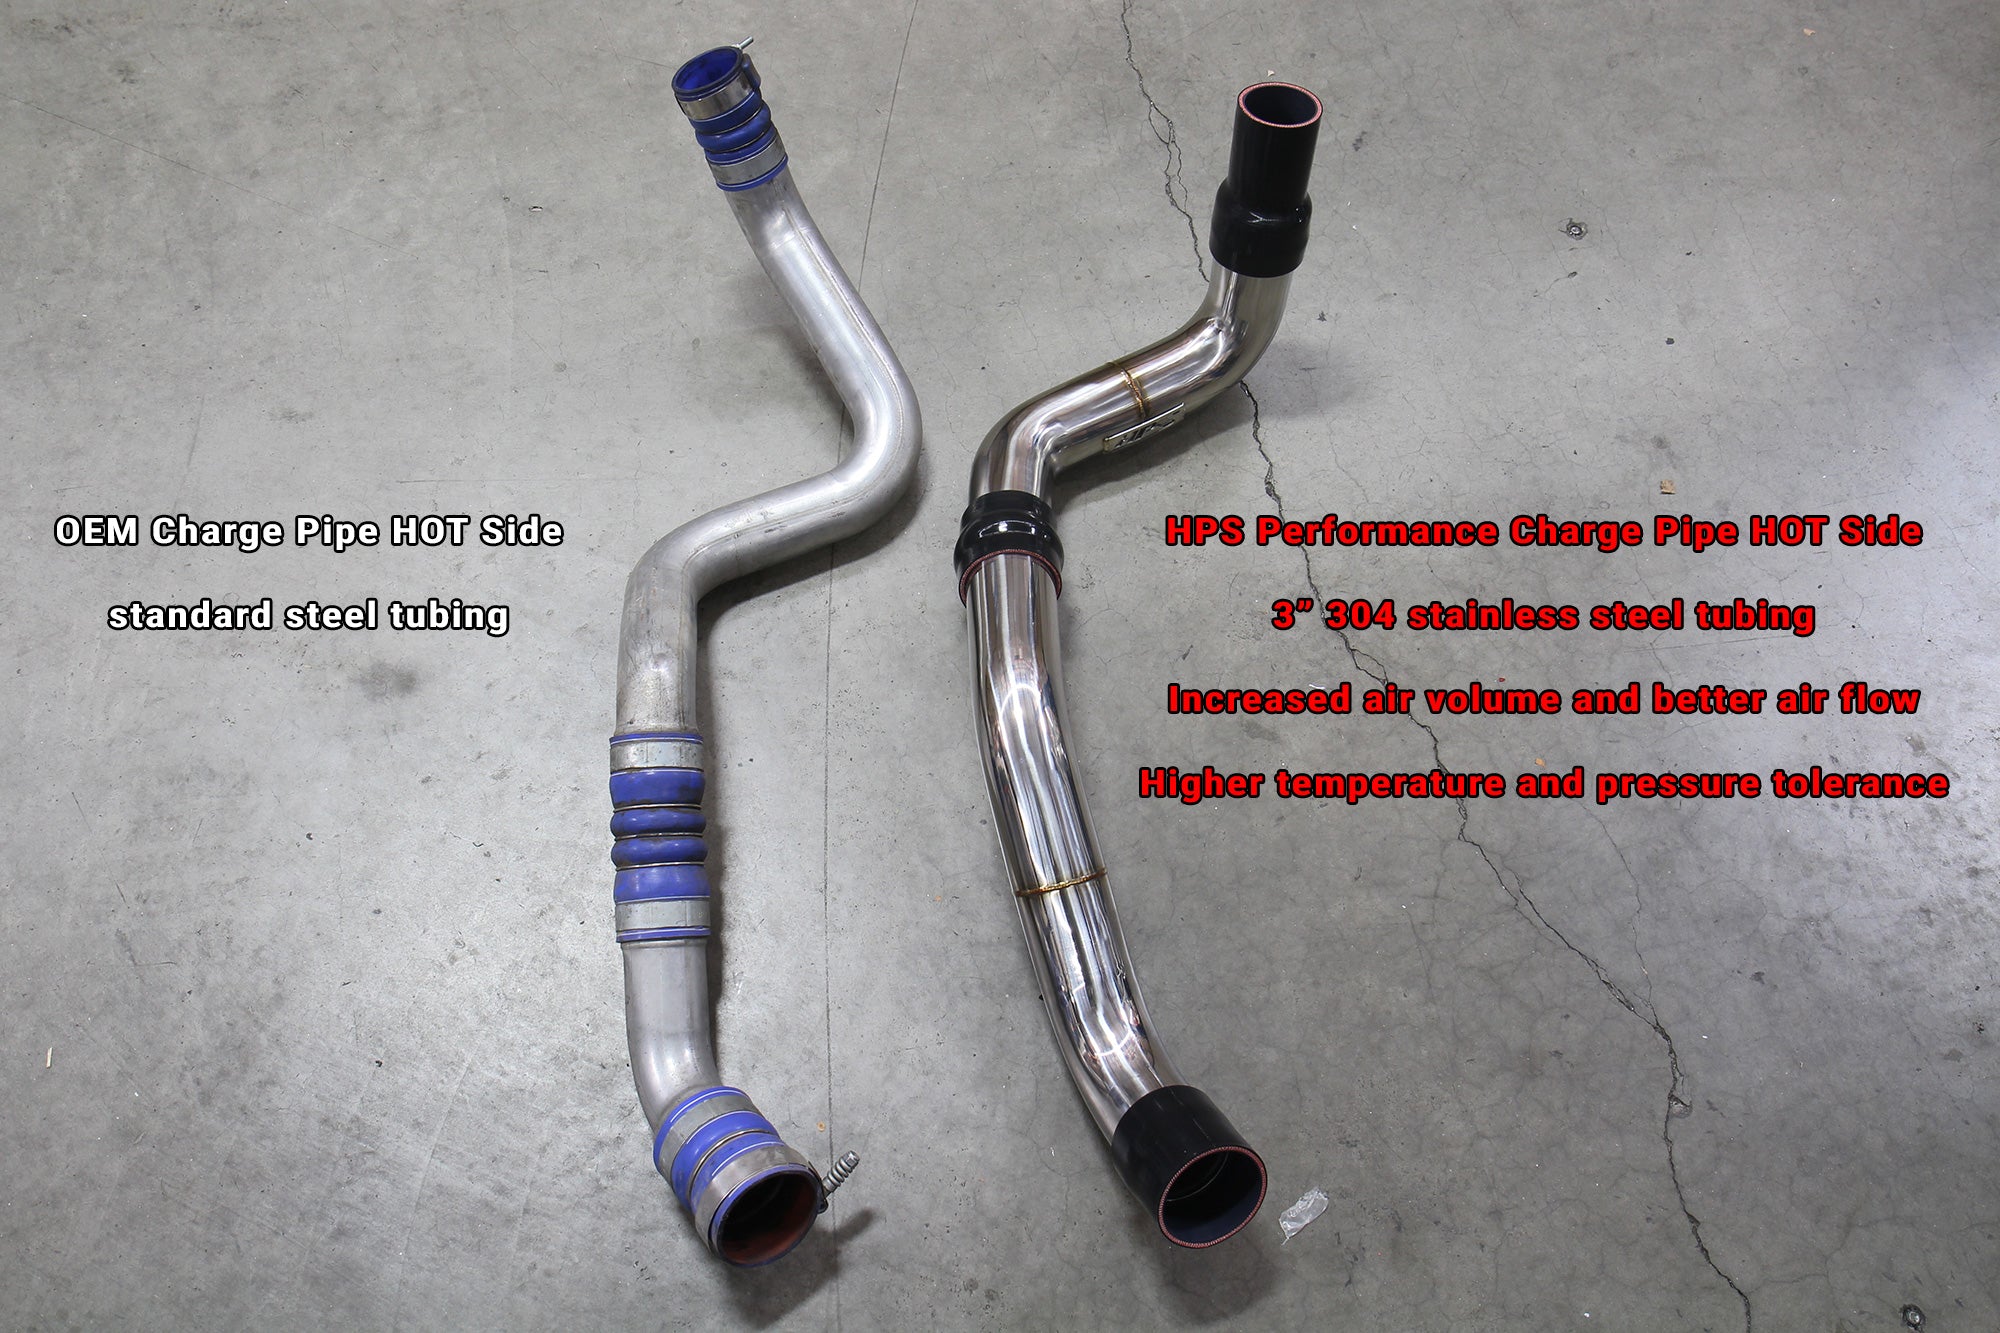 HPS 3" Stainless Steel Charge Pipe Hot Side vs OEM Chevy Silverado 2500HD 6.6L Duramax Diesel Turbo LML 17-126P